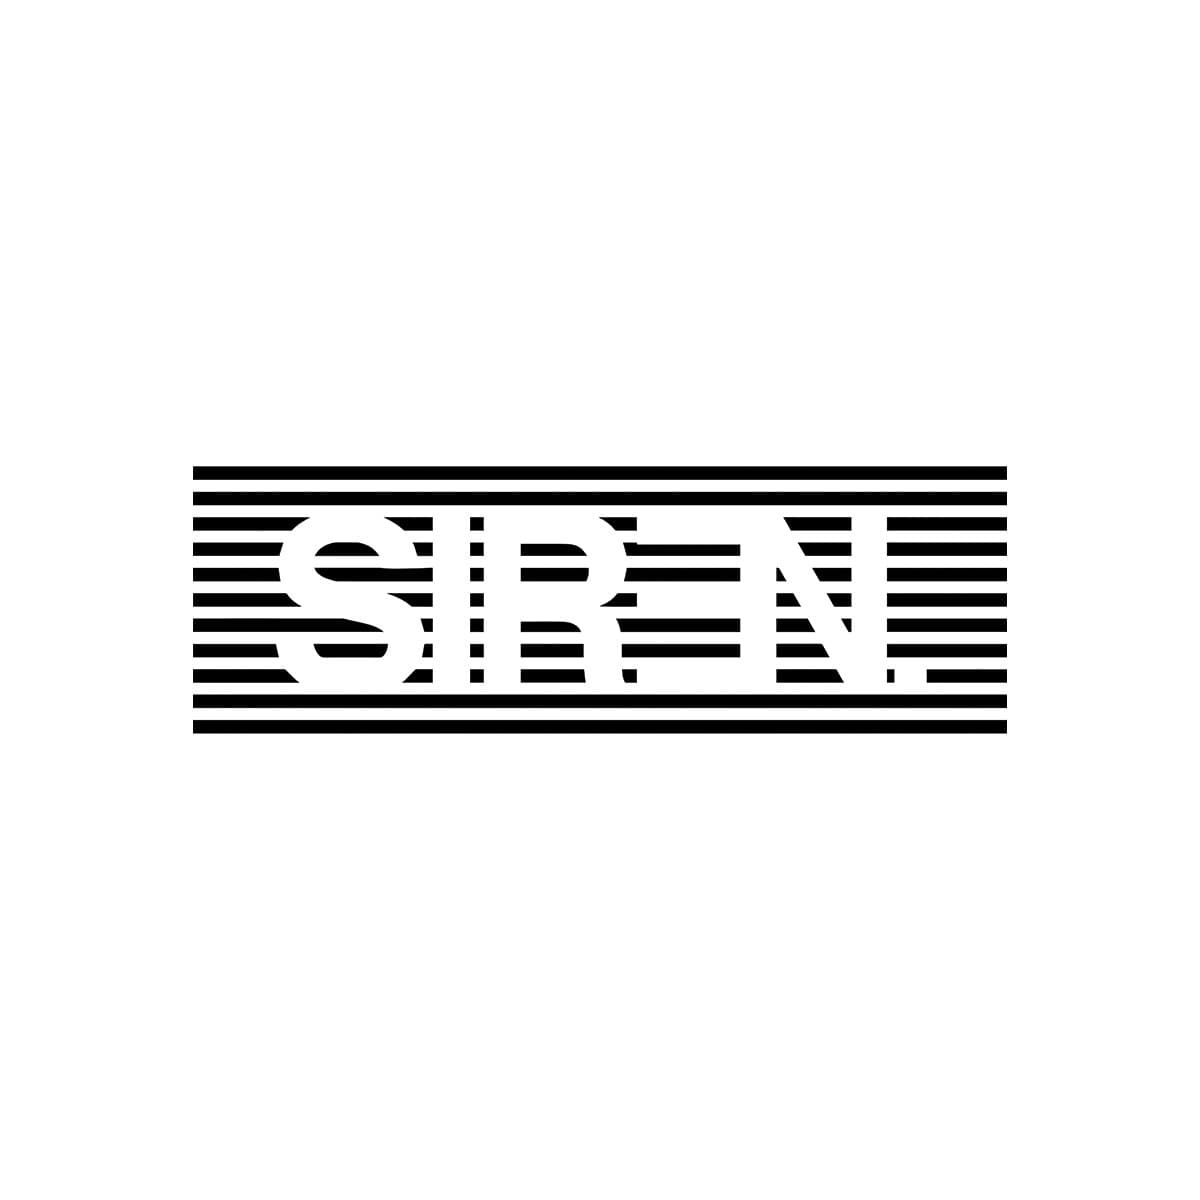 SIREN logo